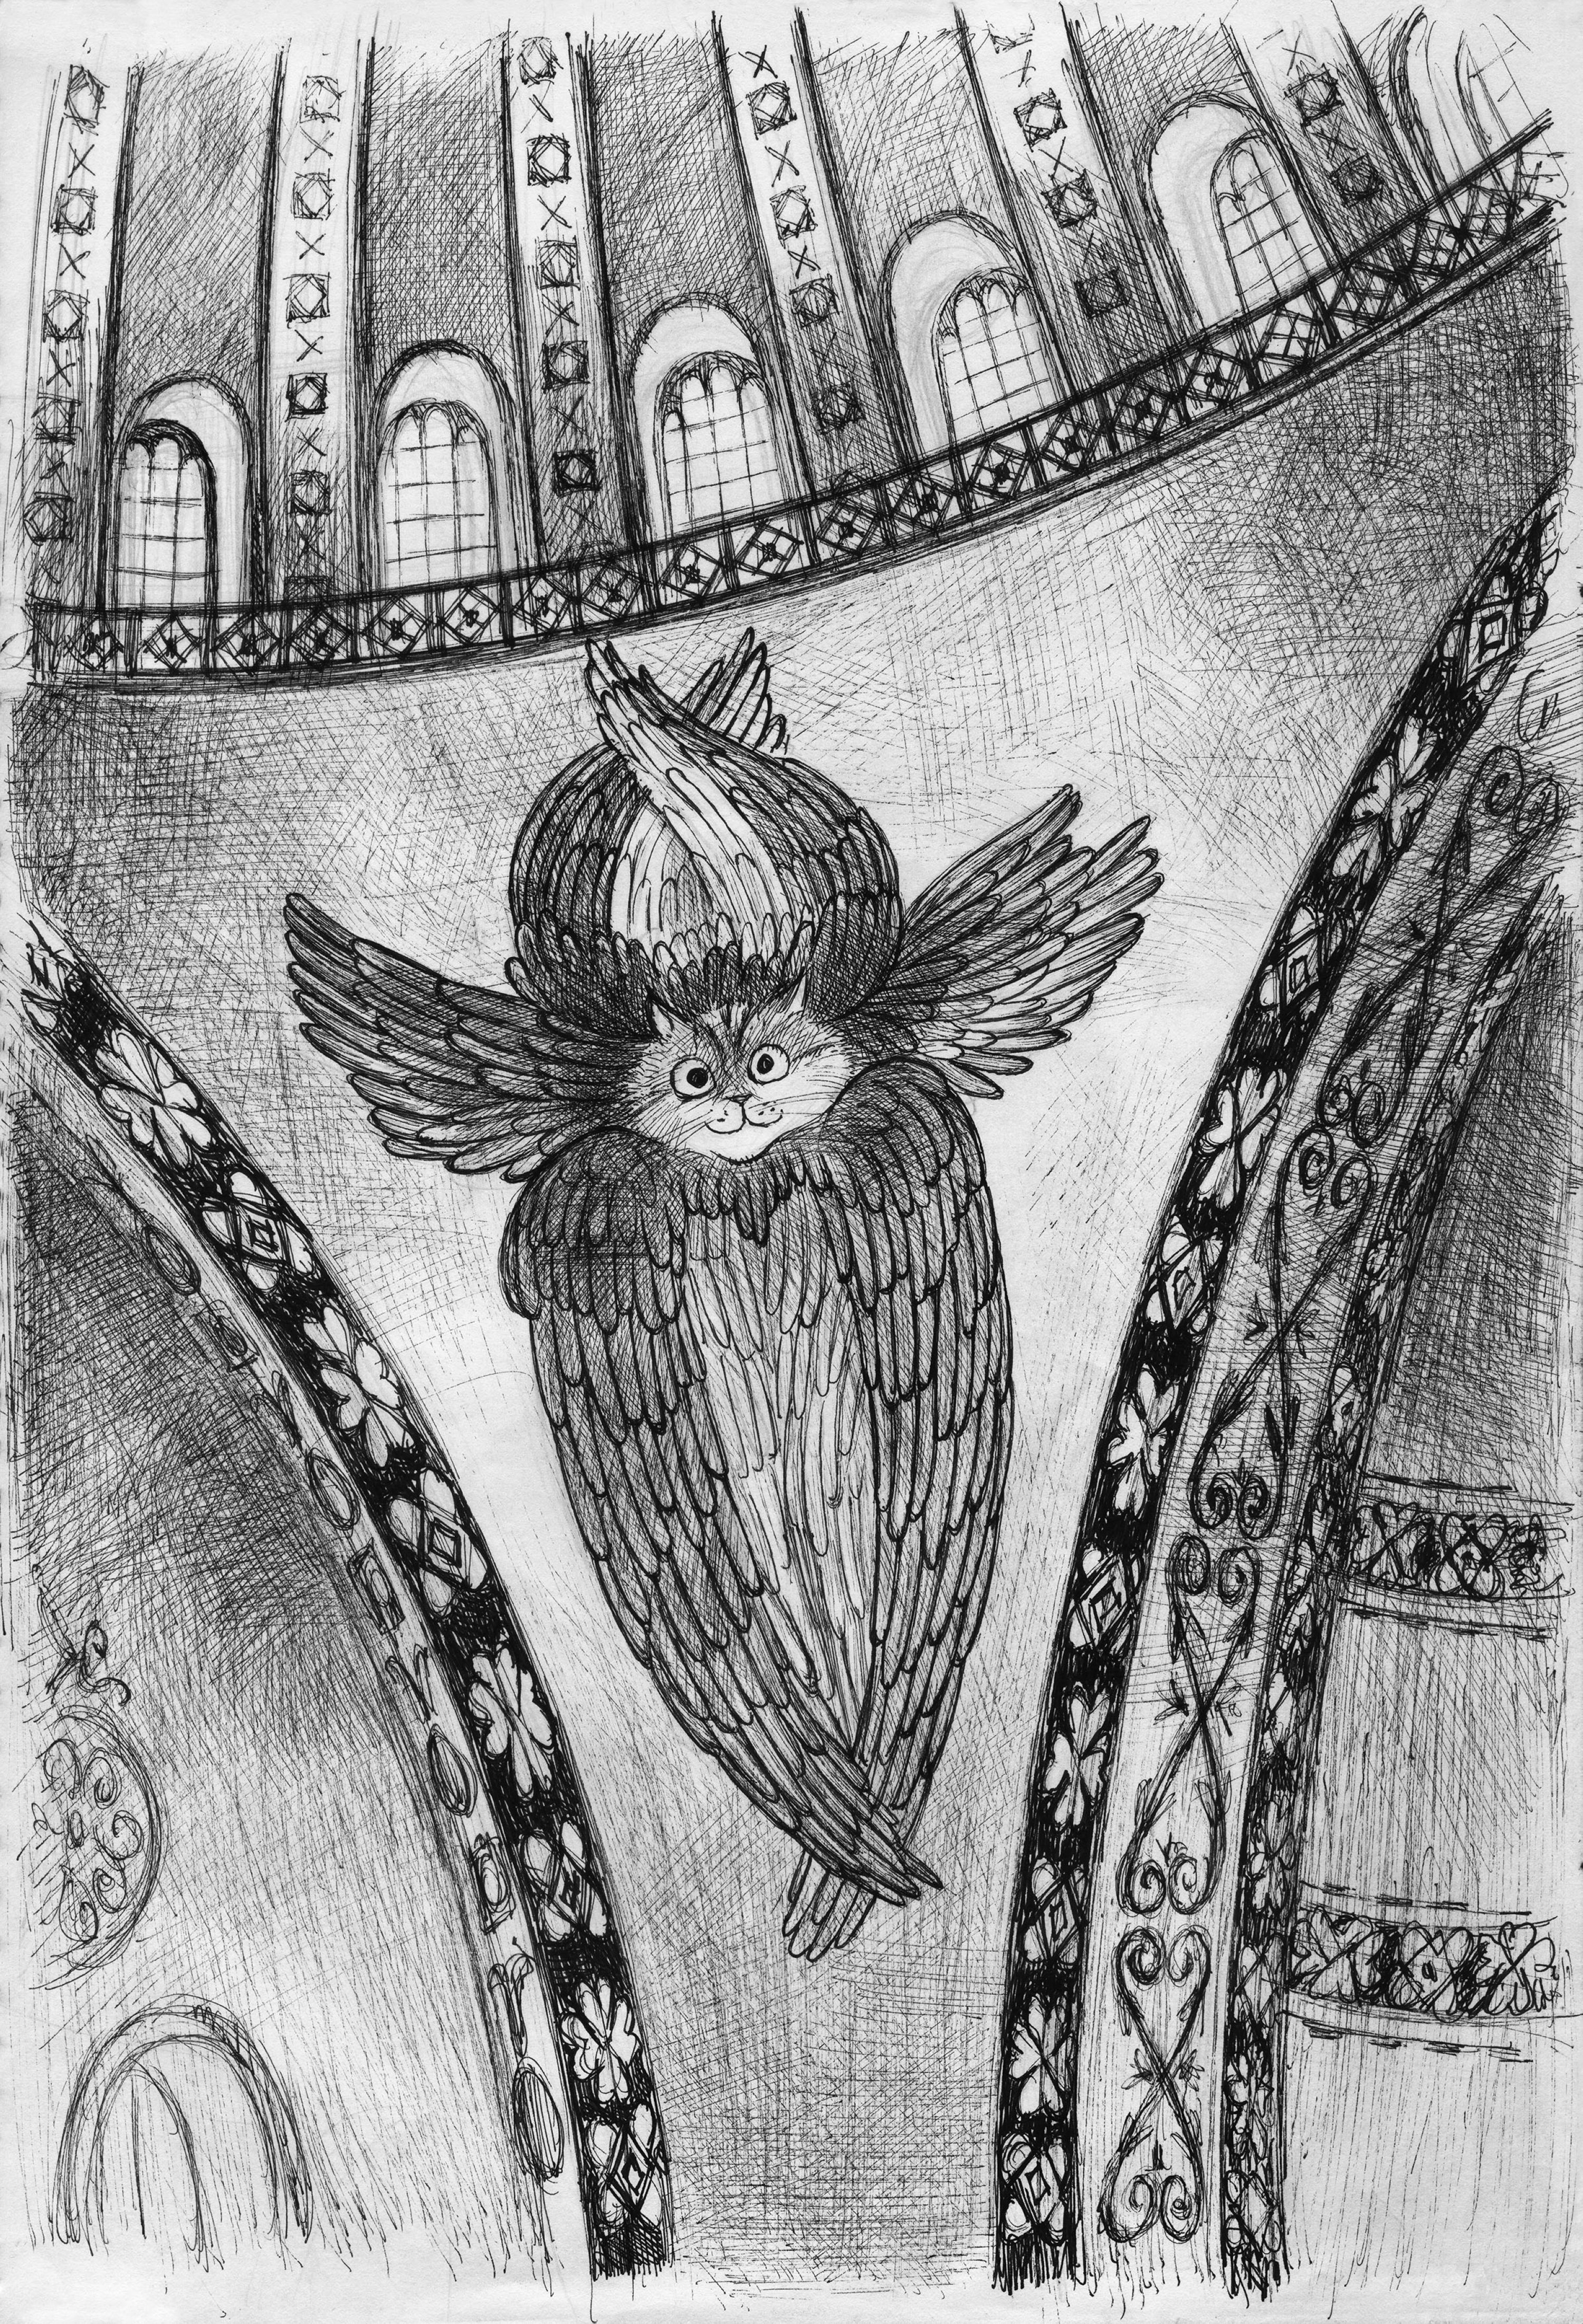 Necdet Yılmaz, “Seraphim Gli”, 2020, 0.05 micron pencil on A4 paper.  (Courtesy of the Pera Museum)